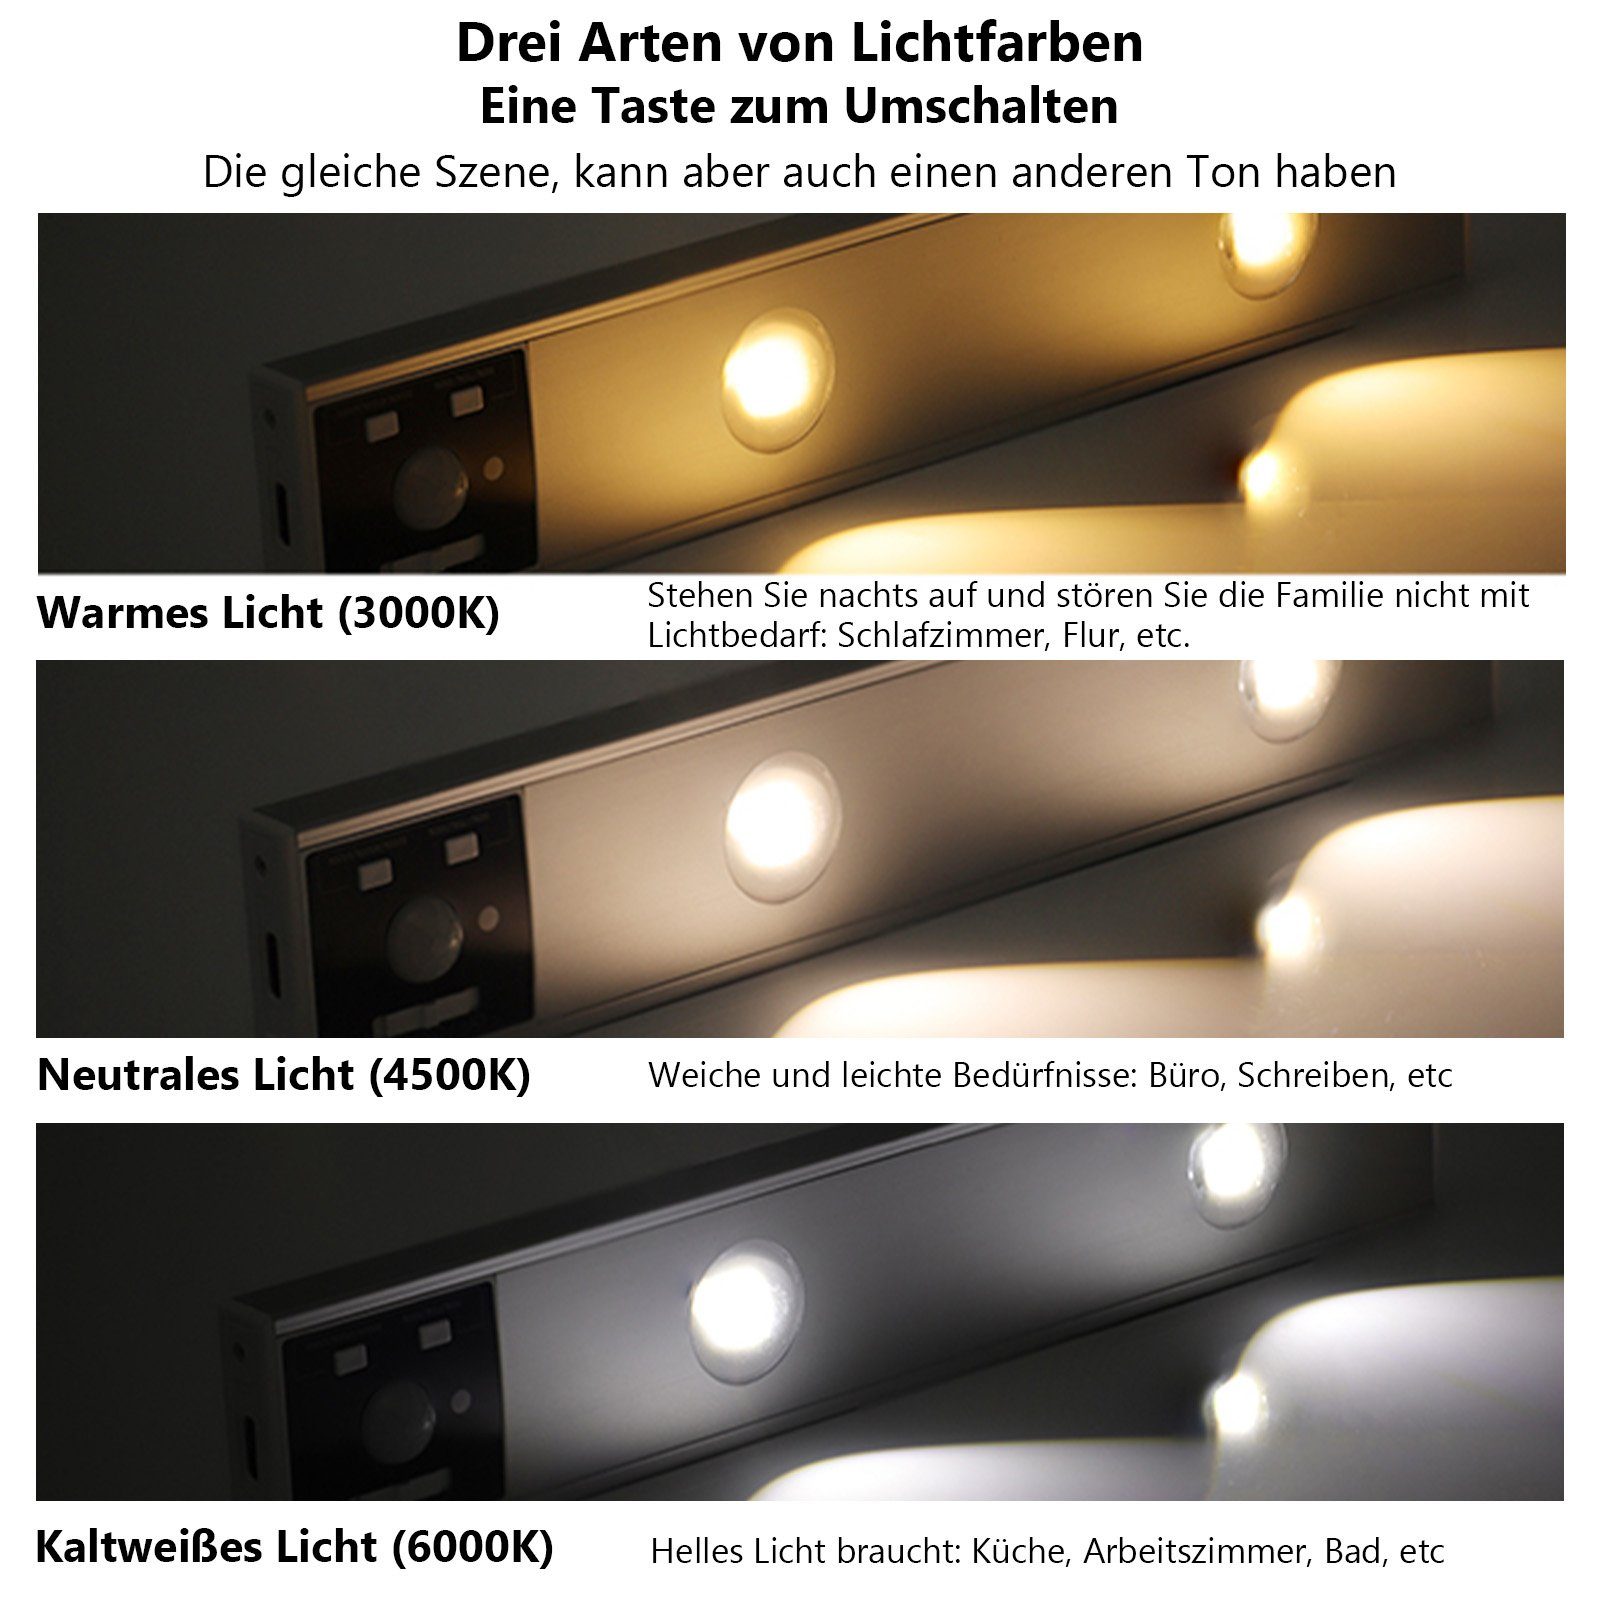 Aufladbar MUPOO LED Dimmbar, USB mit Farben 3 LED Unterbauleuchte Sensor Licht, Schrankbeleuchtung Küche, Bewegungsmelder,Unterbauleuchte